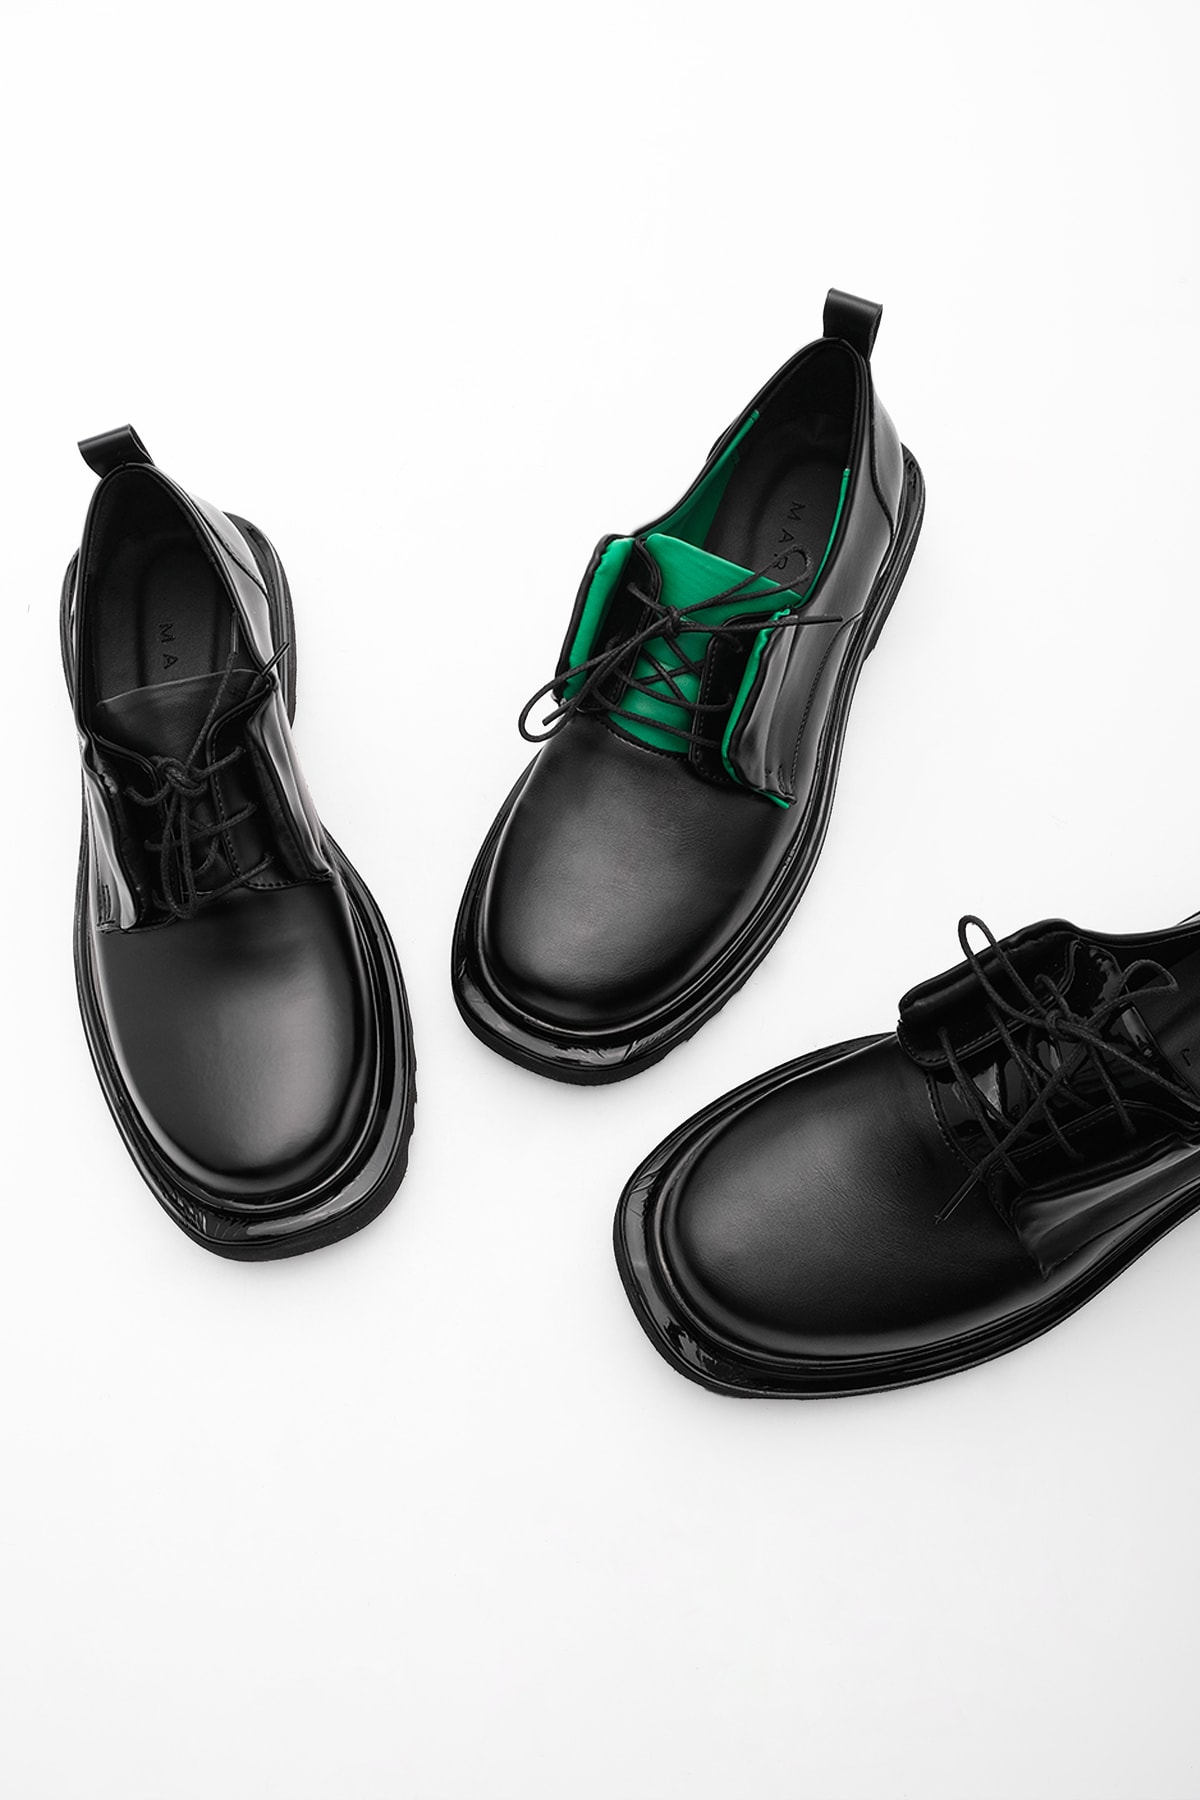 Marjin Kadın Oxford Ayakkabı Kalın Taban Bağcıklı Günlük Ayakkabı Enres yeşil ON10183